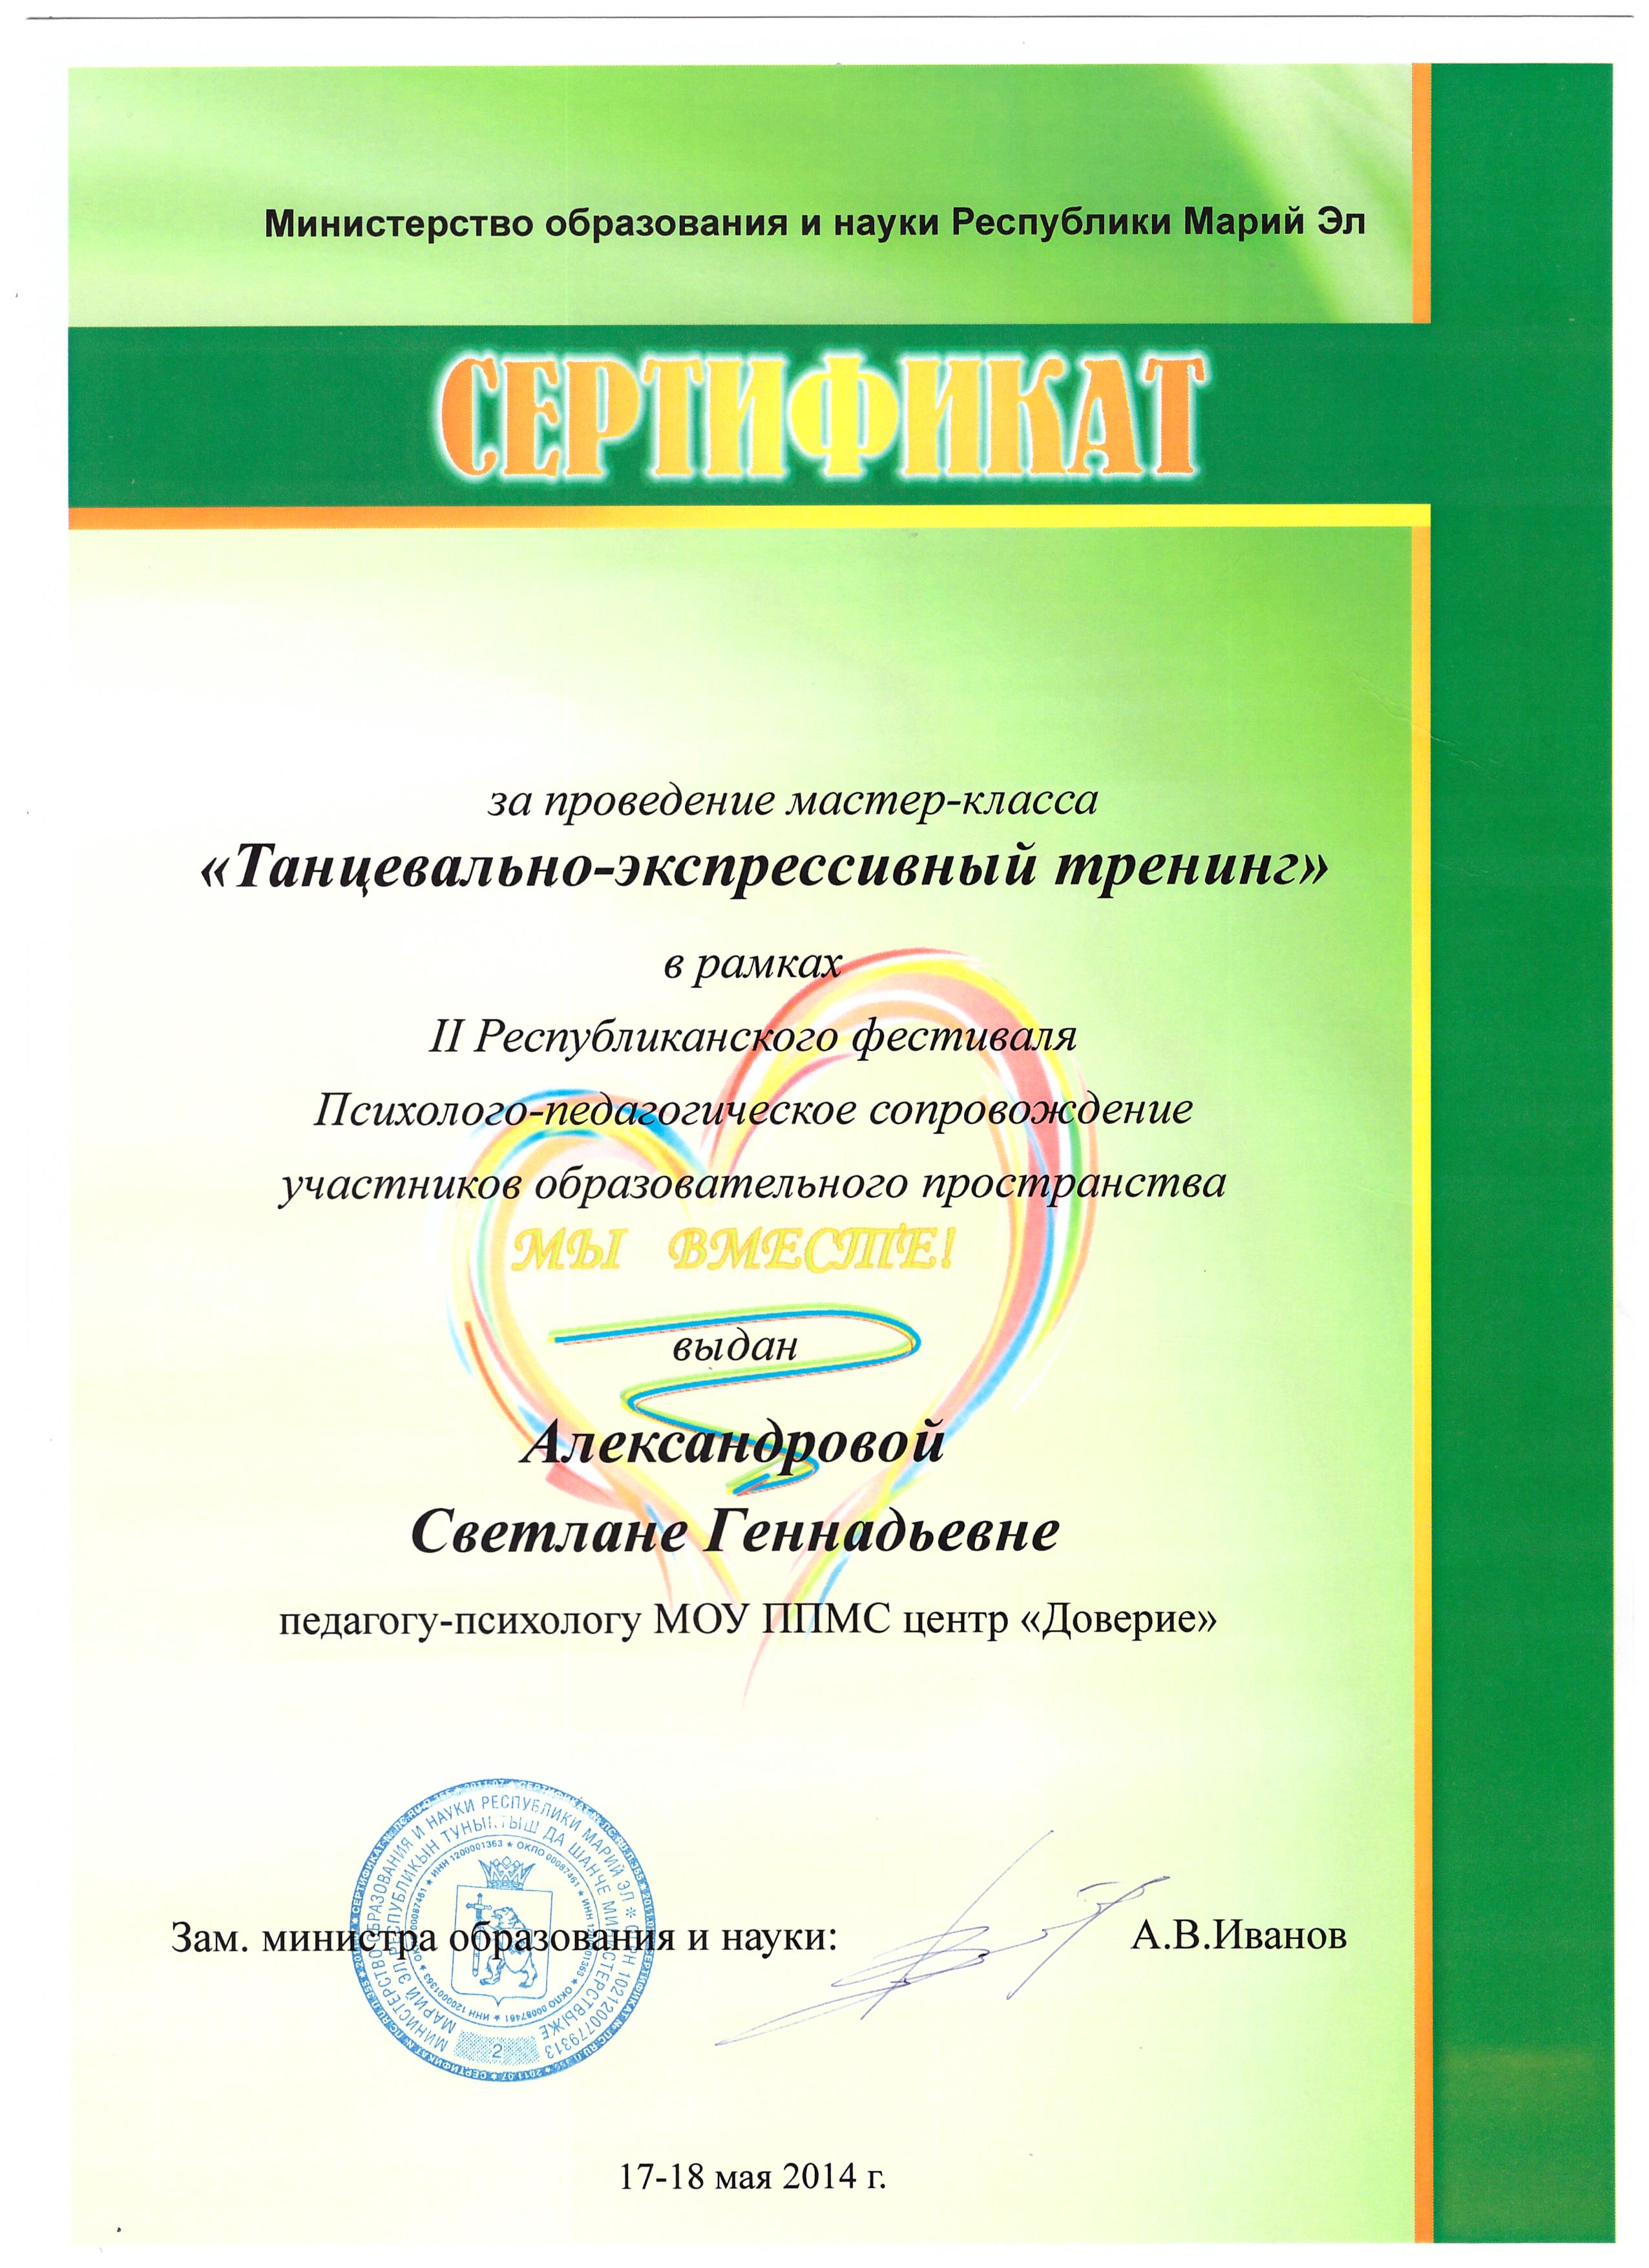 Фестиваль сертификат